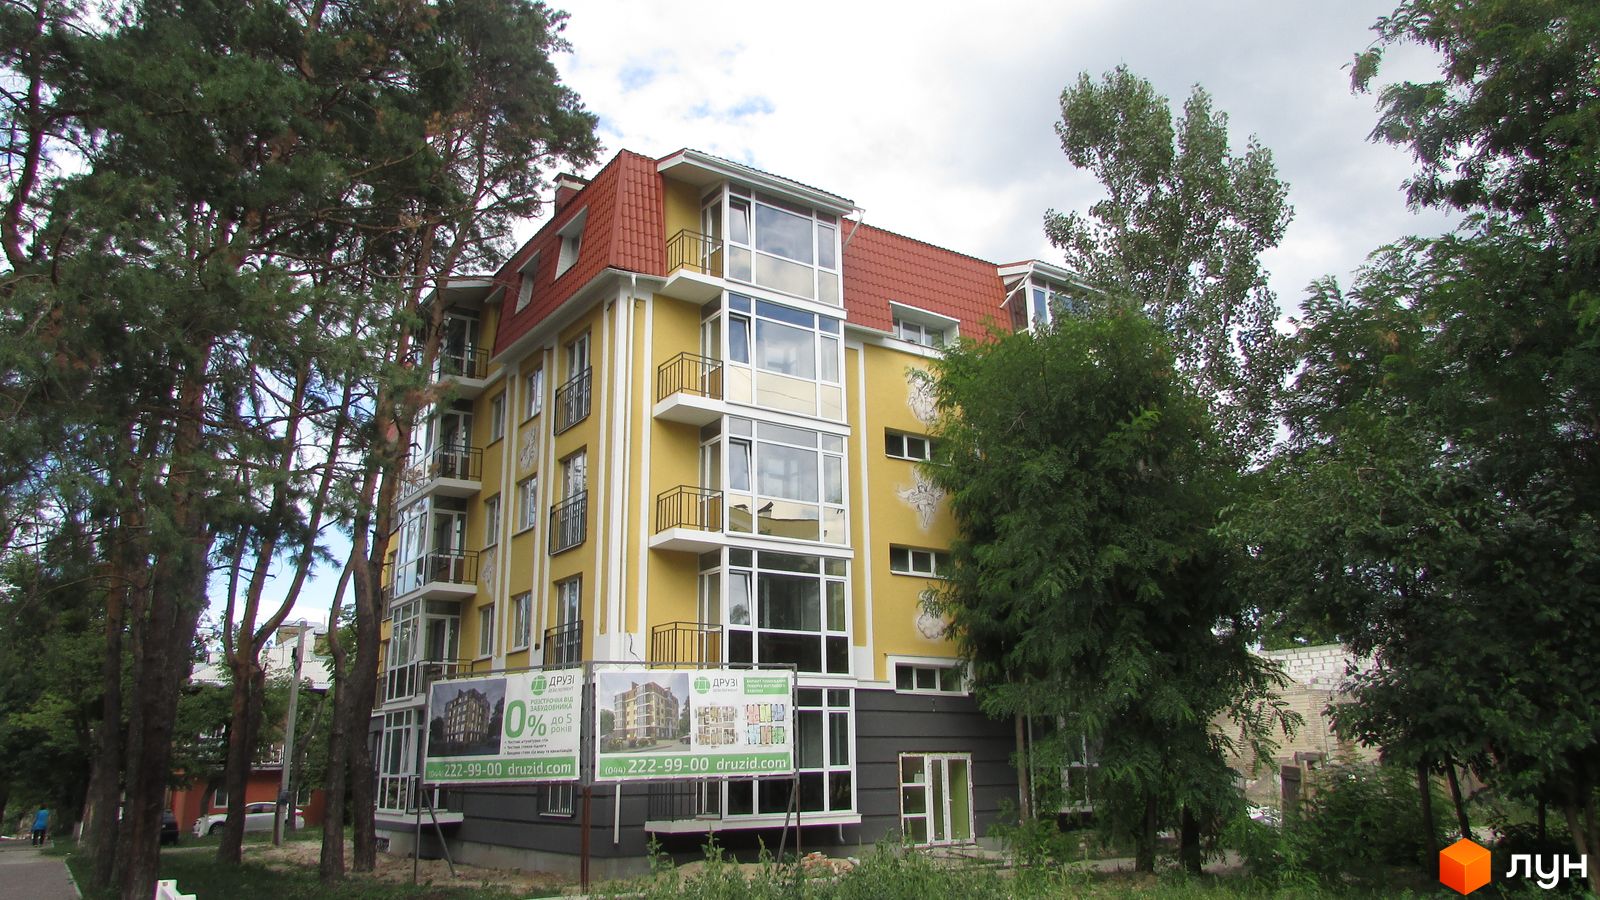 Моніторинг будівництва Клубний будинок „Покровська, 9“ - Ракурс 1, серпень 2016